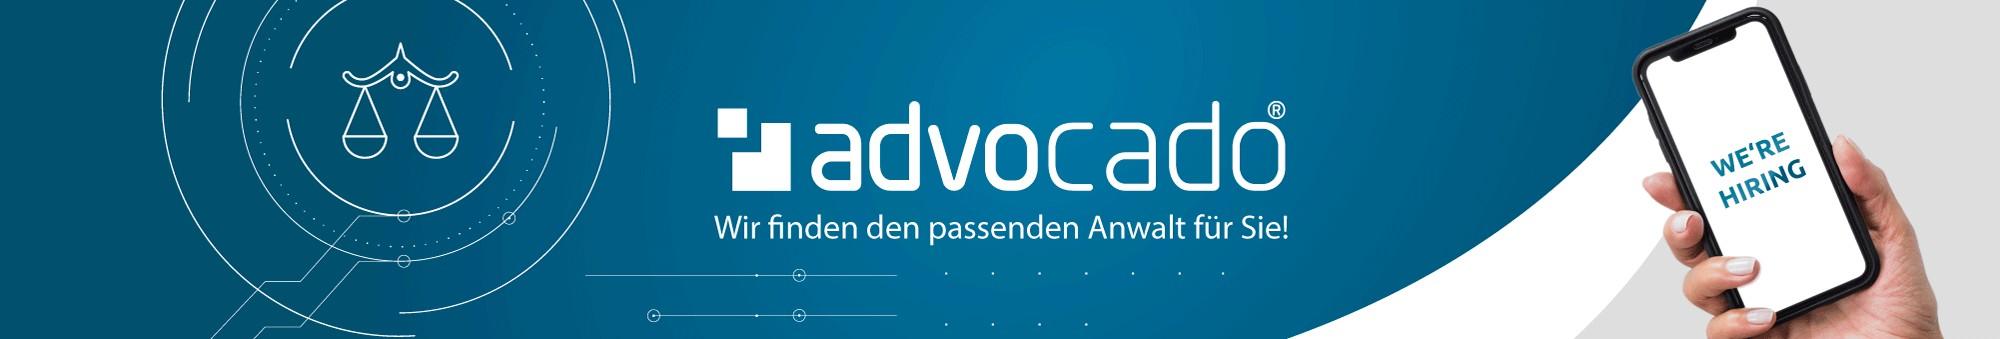 advocado / startup von Greifswald / Background